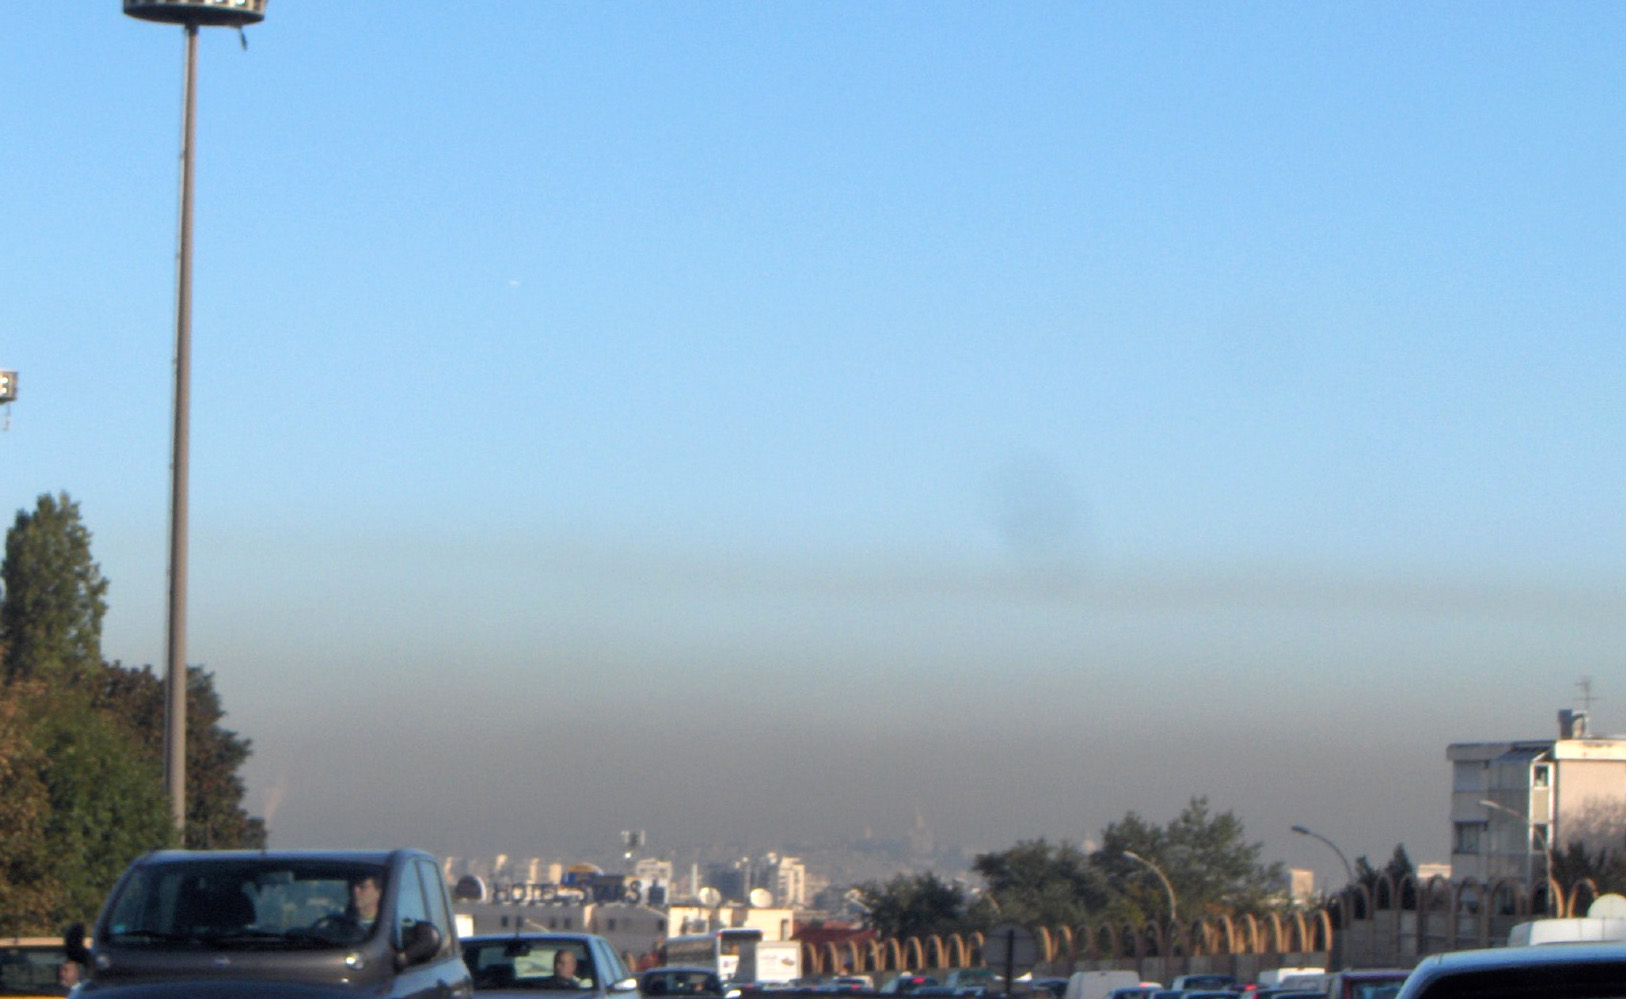 Les épisodes de pollution à l'ozone sont fréquents à Paris. Lorsqu'un événement survient, les personnes fragiles doivent éviter les activités physiques intenses. Les PM10 pénètrent dans le système respiratoire et peuvent causer des troubles cardiovasculaires. © Céréales Killer, Wikimedia Commons, GNU 1.2